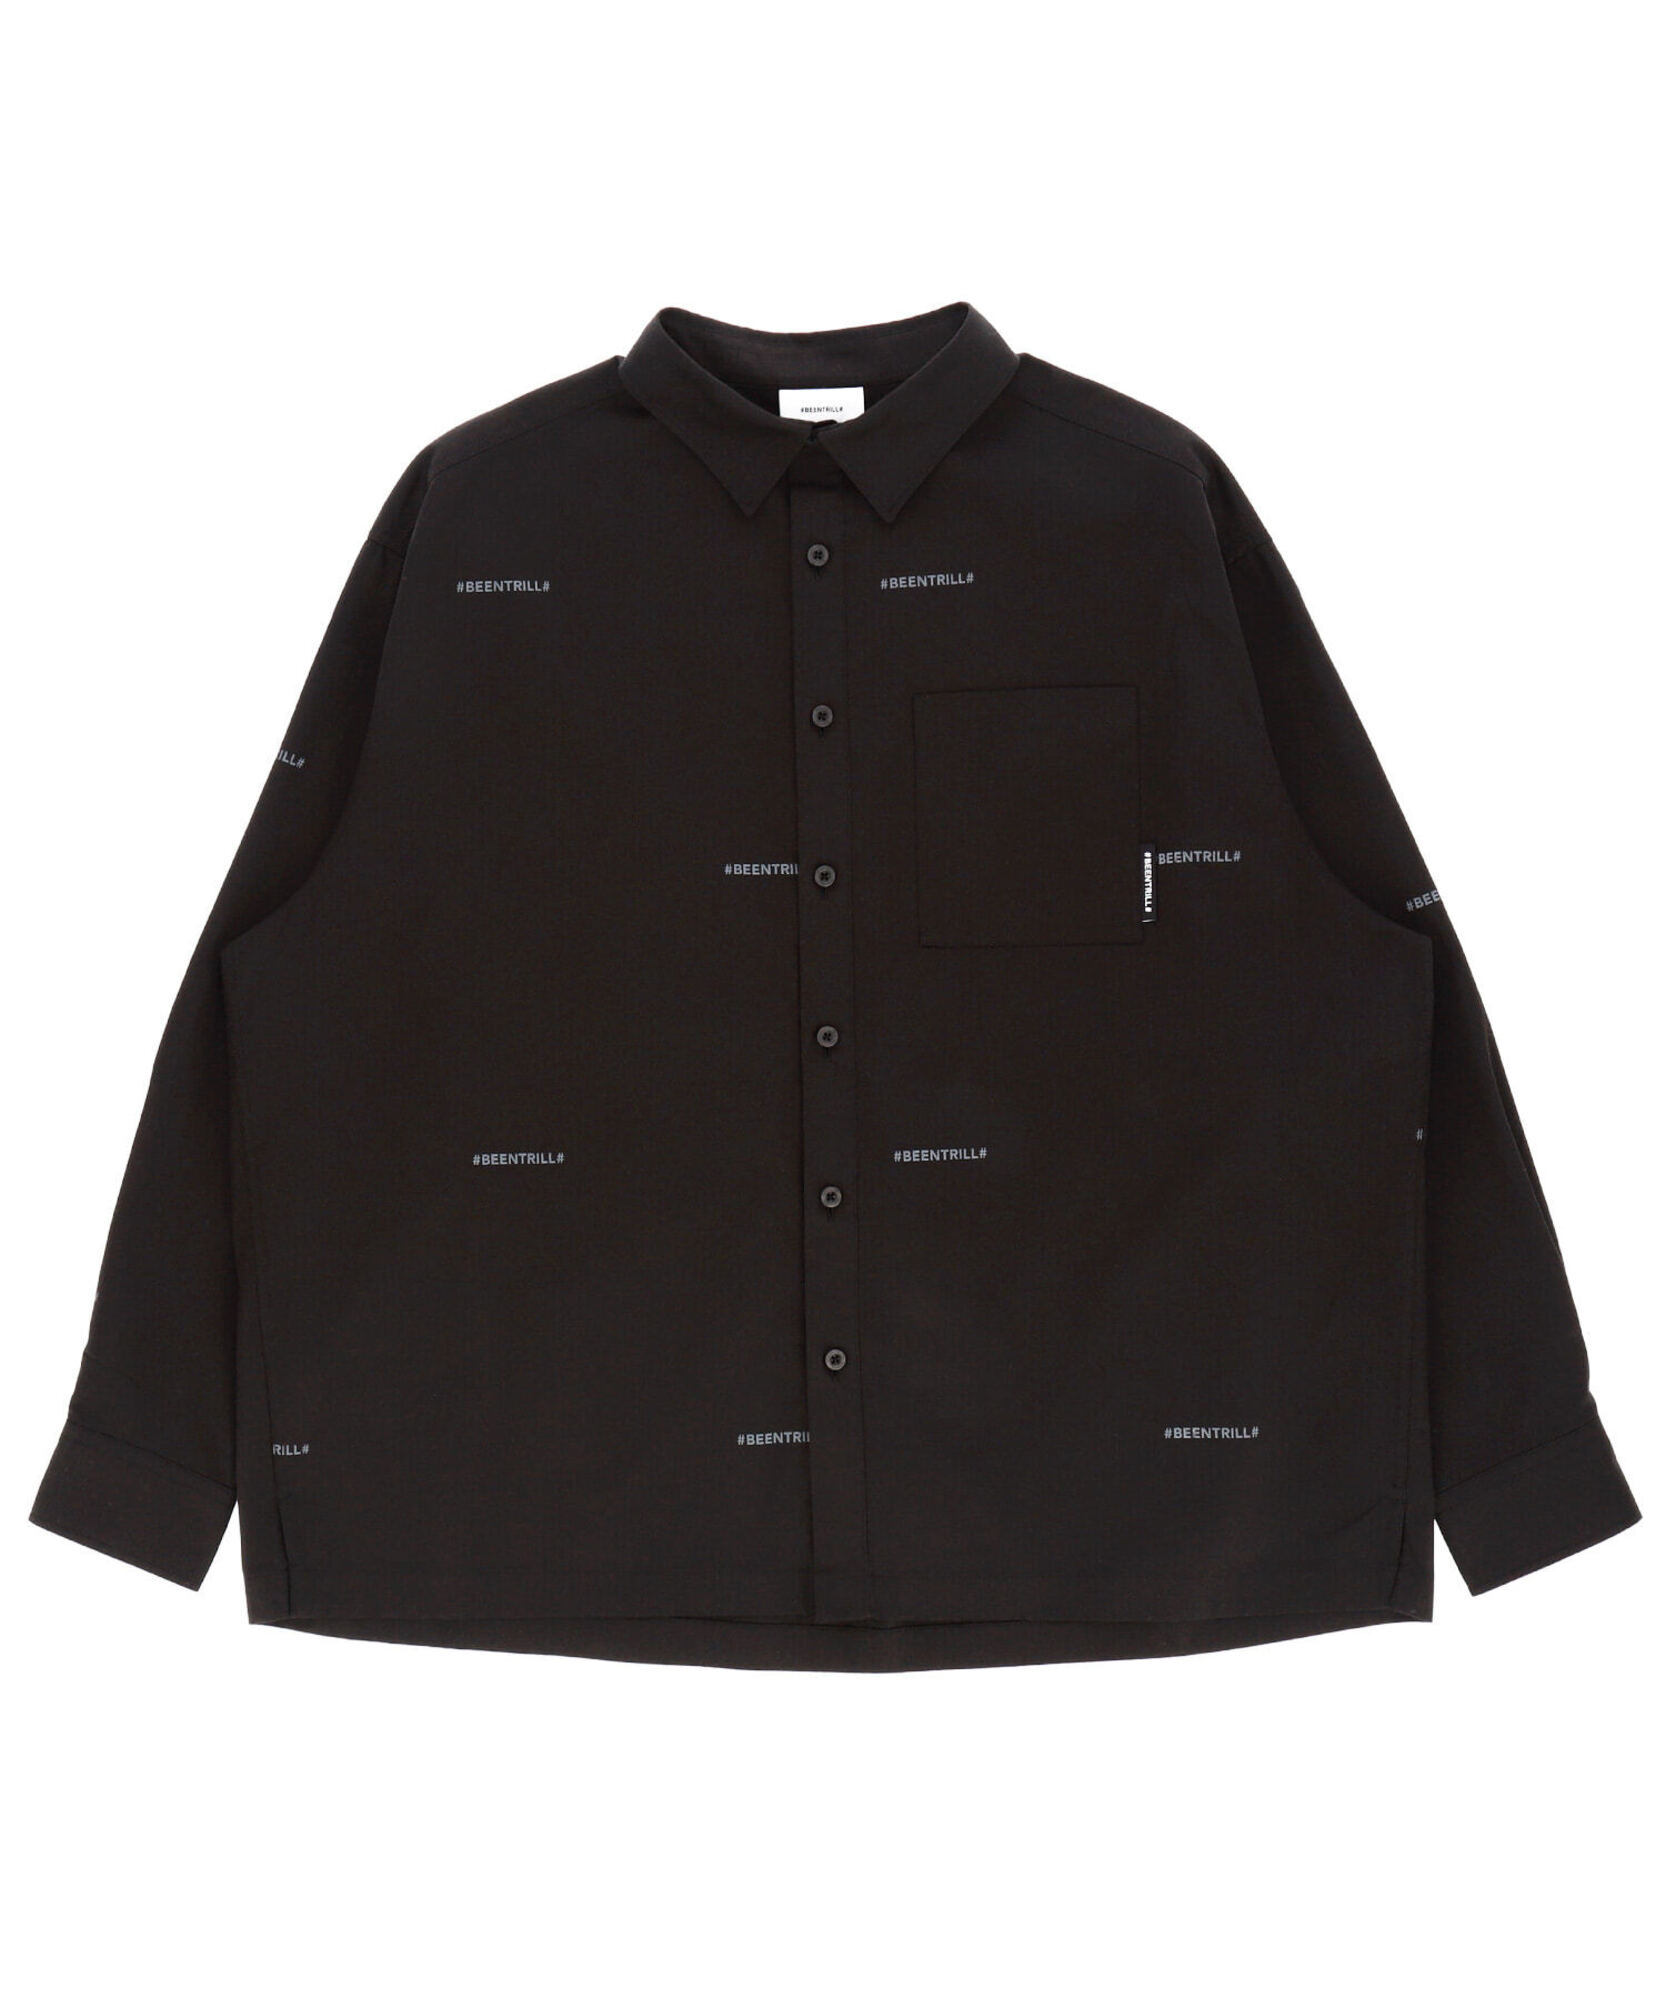 라임 모노그램 오버핏 셔츠(블랙)